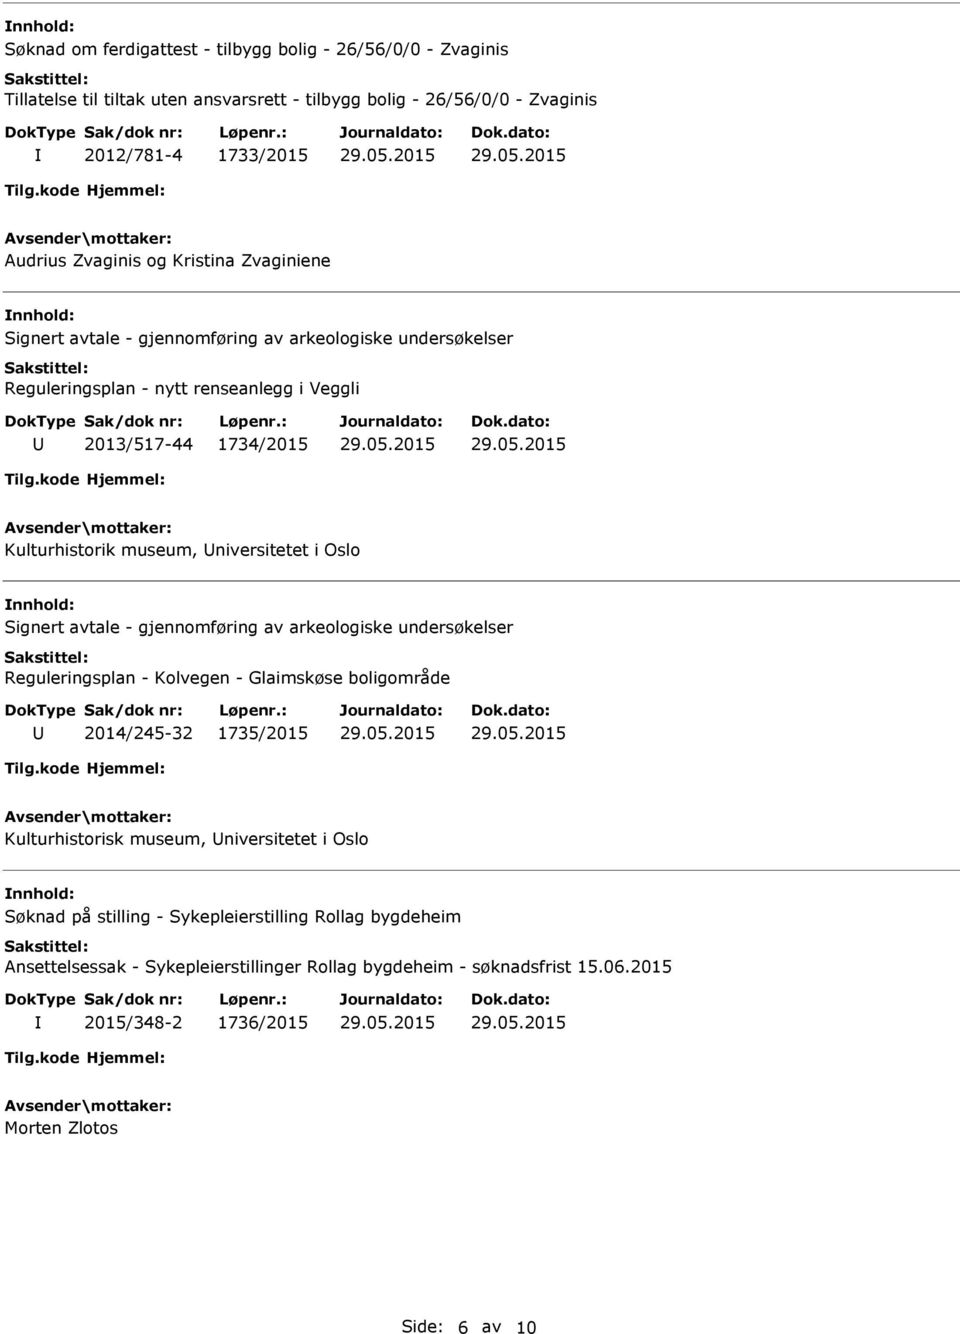 i Oslo nnhold: Signert avtale - gjennomføring av arkeologiske undersøkelser Reguleringsplan - Kolvegen - Glaimskøse boligområde 2014/245-32 1735/2015 Kulturhistorisk museum, niversitetet i